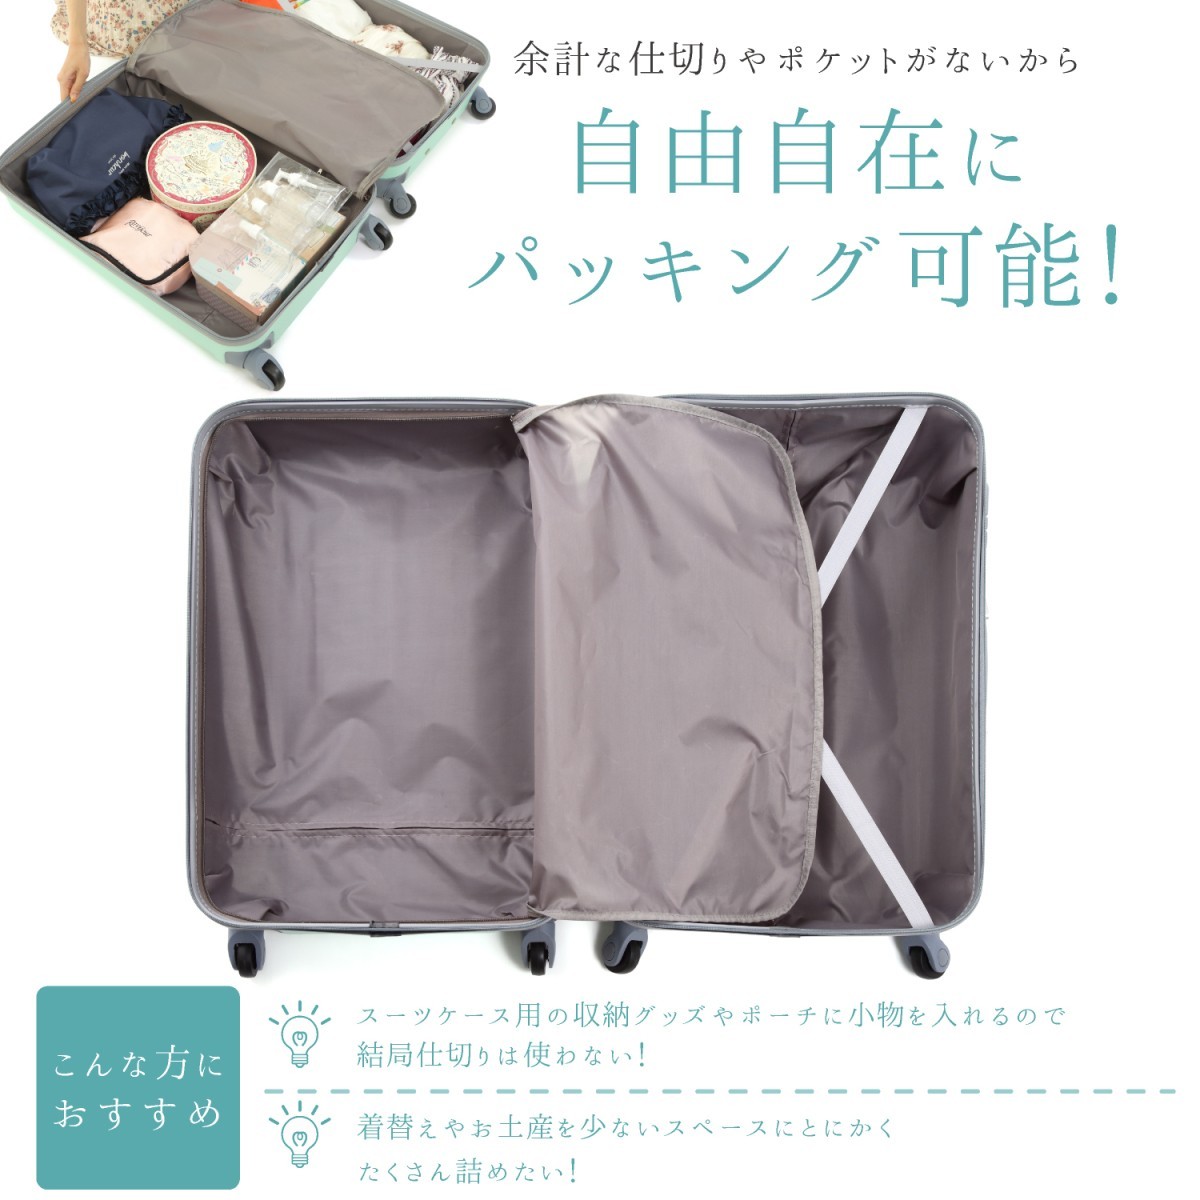 [ outlet ] чемодан SS S M размер машина внутри принесенный супер-легкий чемодан Carry кейс модный . индустрия детский за границей внутренний путешествие ..2 3 4 5. день 